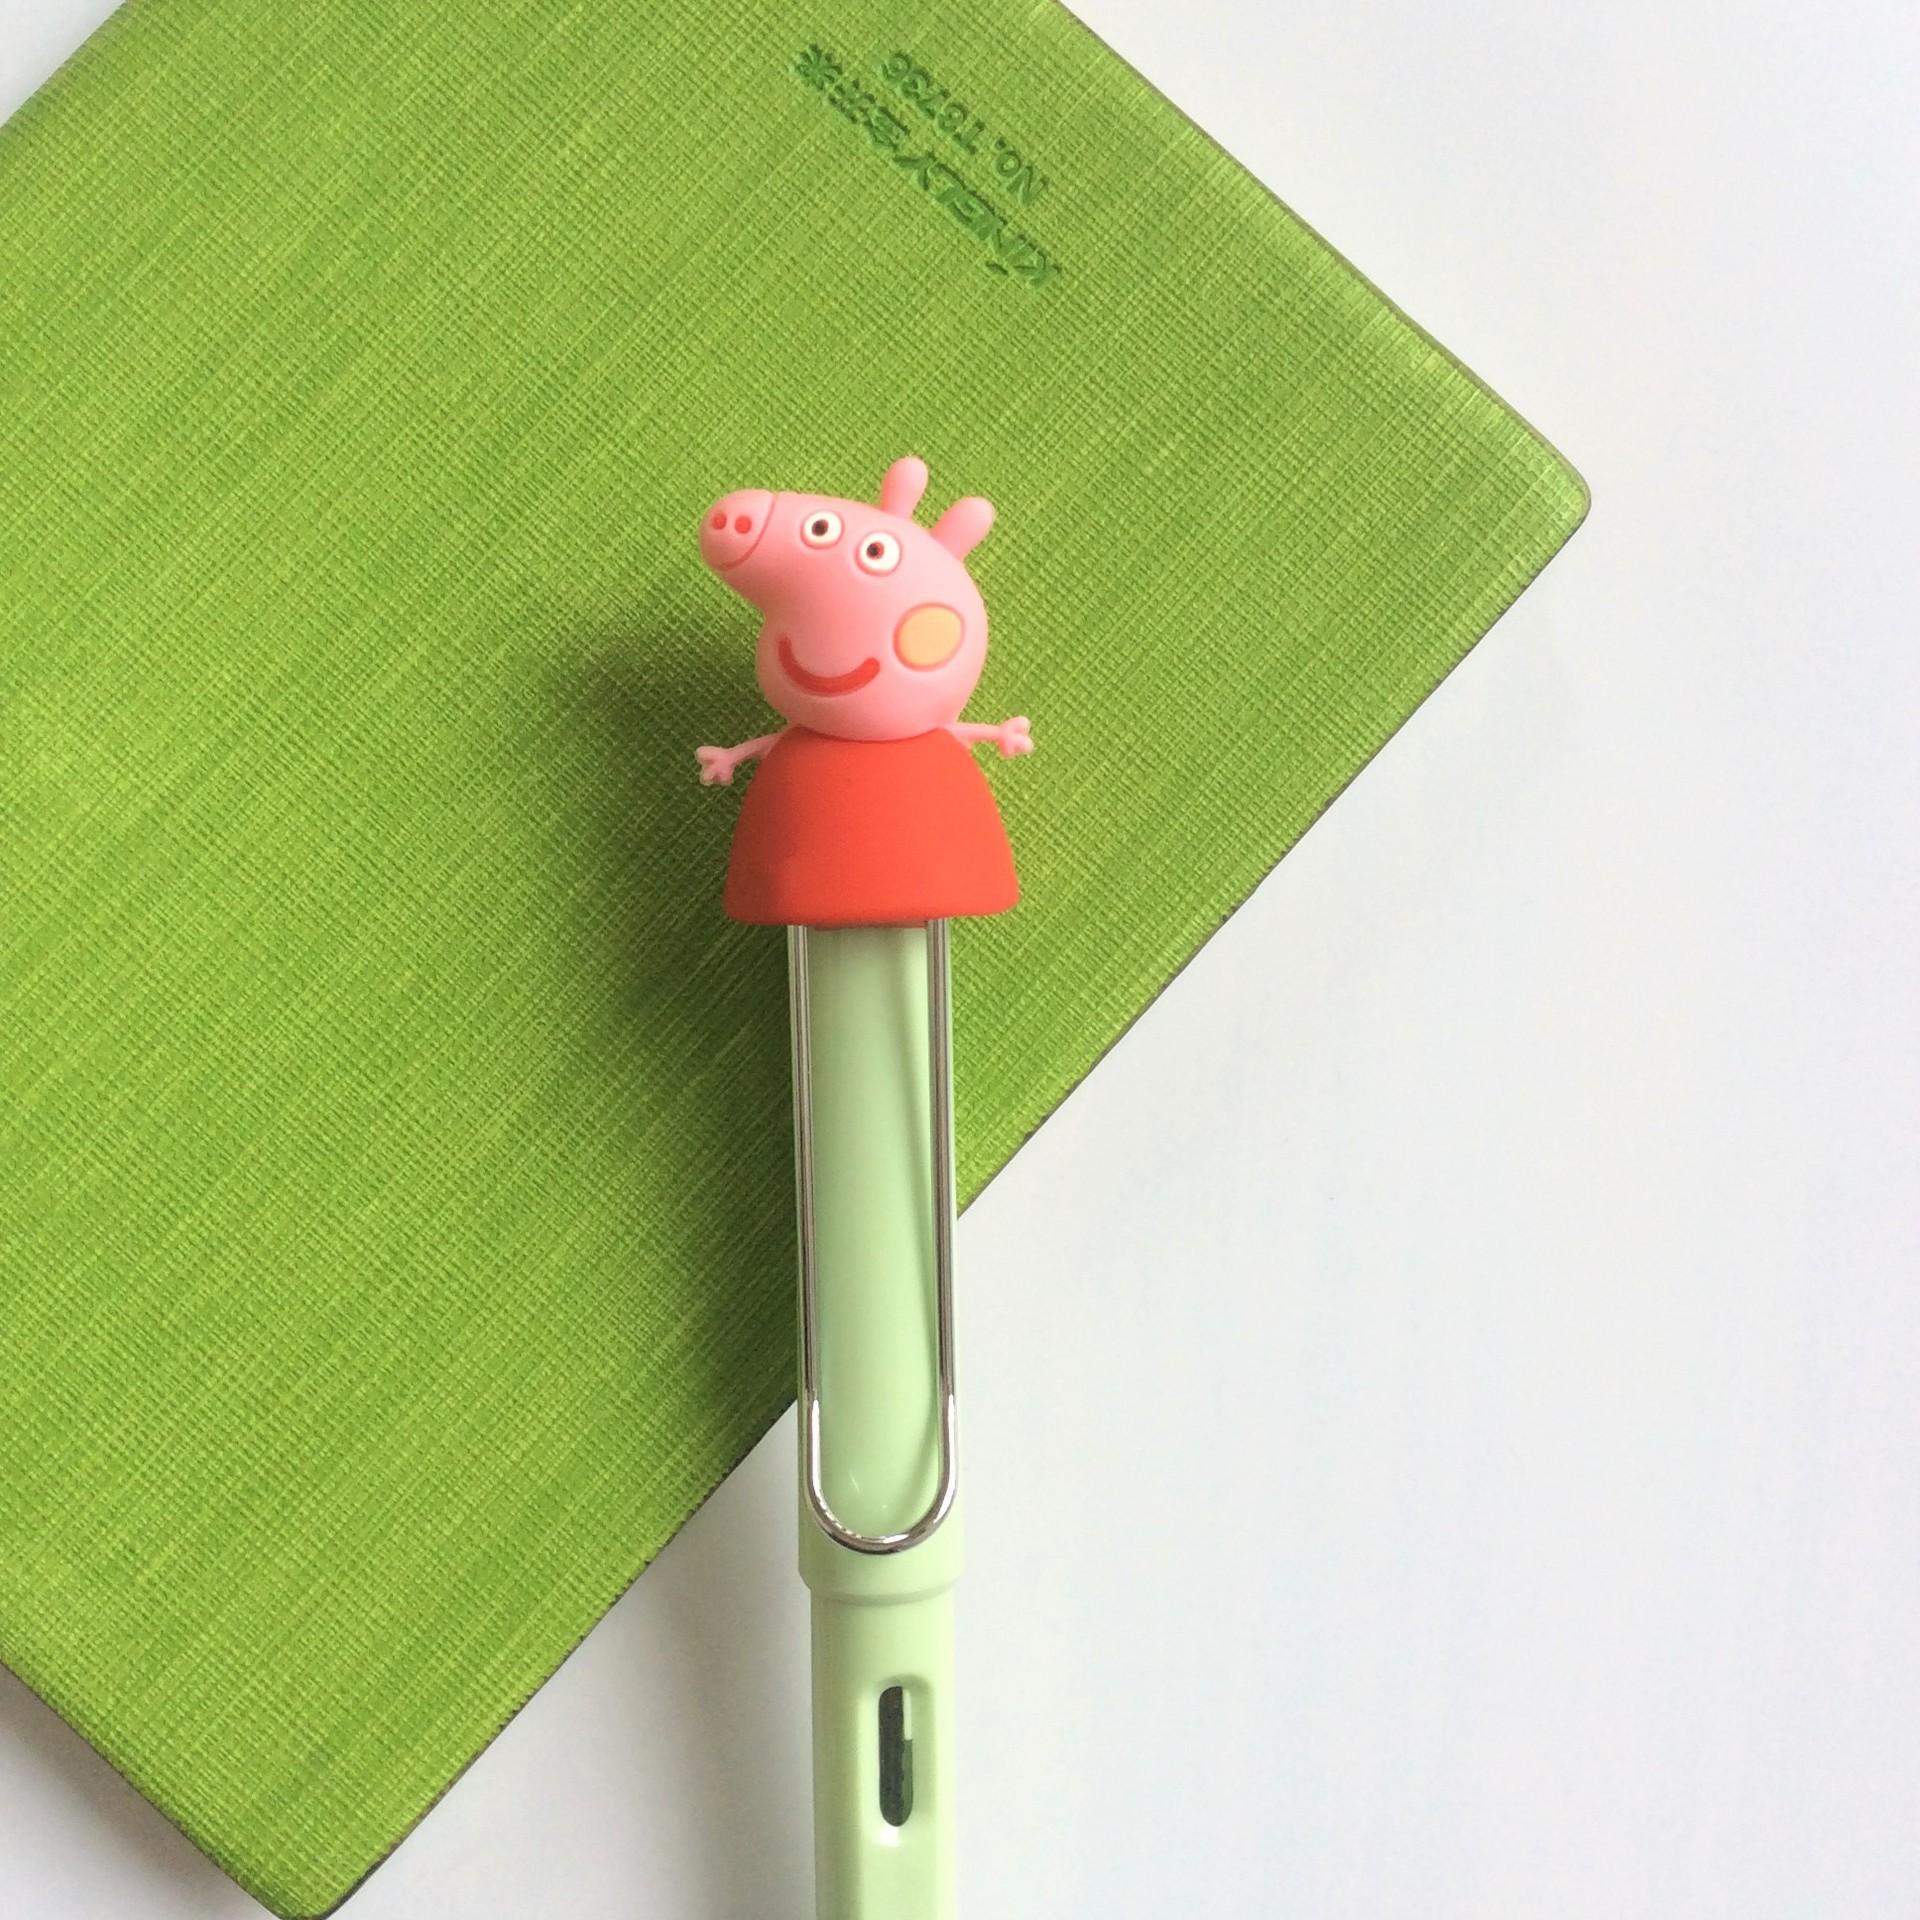 硅胶笔帽 PVC软胶笔夹 立体卡通小猪笔头 铅笔圆珠笔钢笔配饰批发